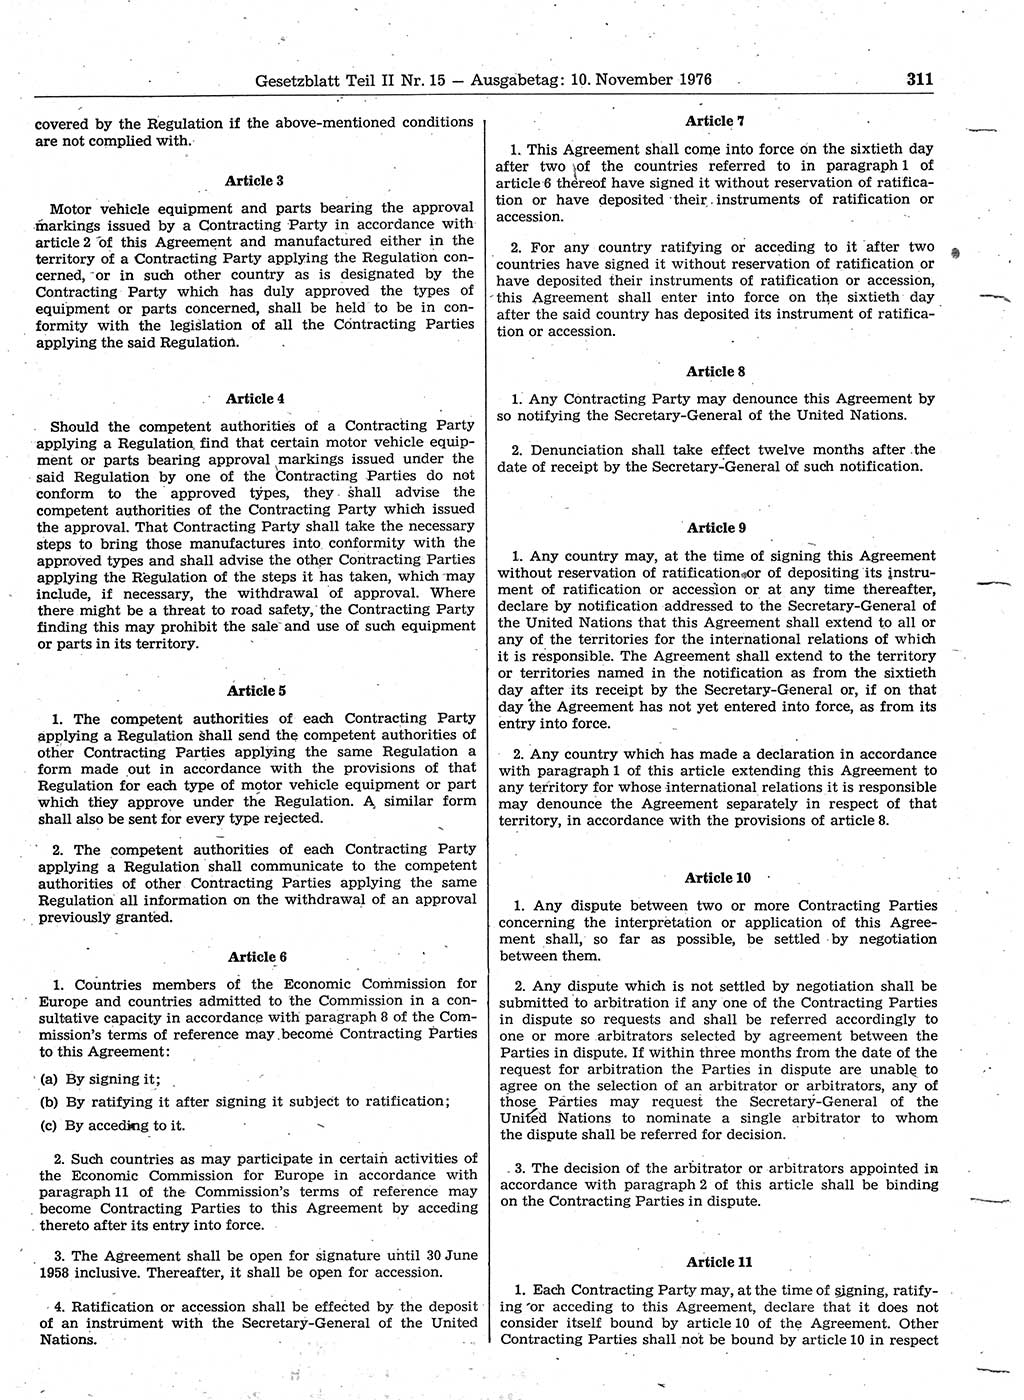 Gesetzblatt (GBl.) der Deutschen Demokratischen Republik (DDR) Teil ⅠⅠ 1976, Seite 311 (GBl. DDR ⅠⅠ 1976, S. 311)